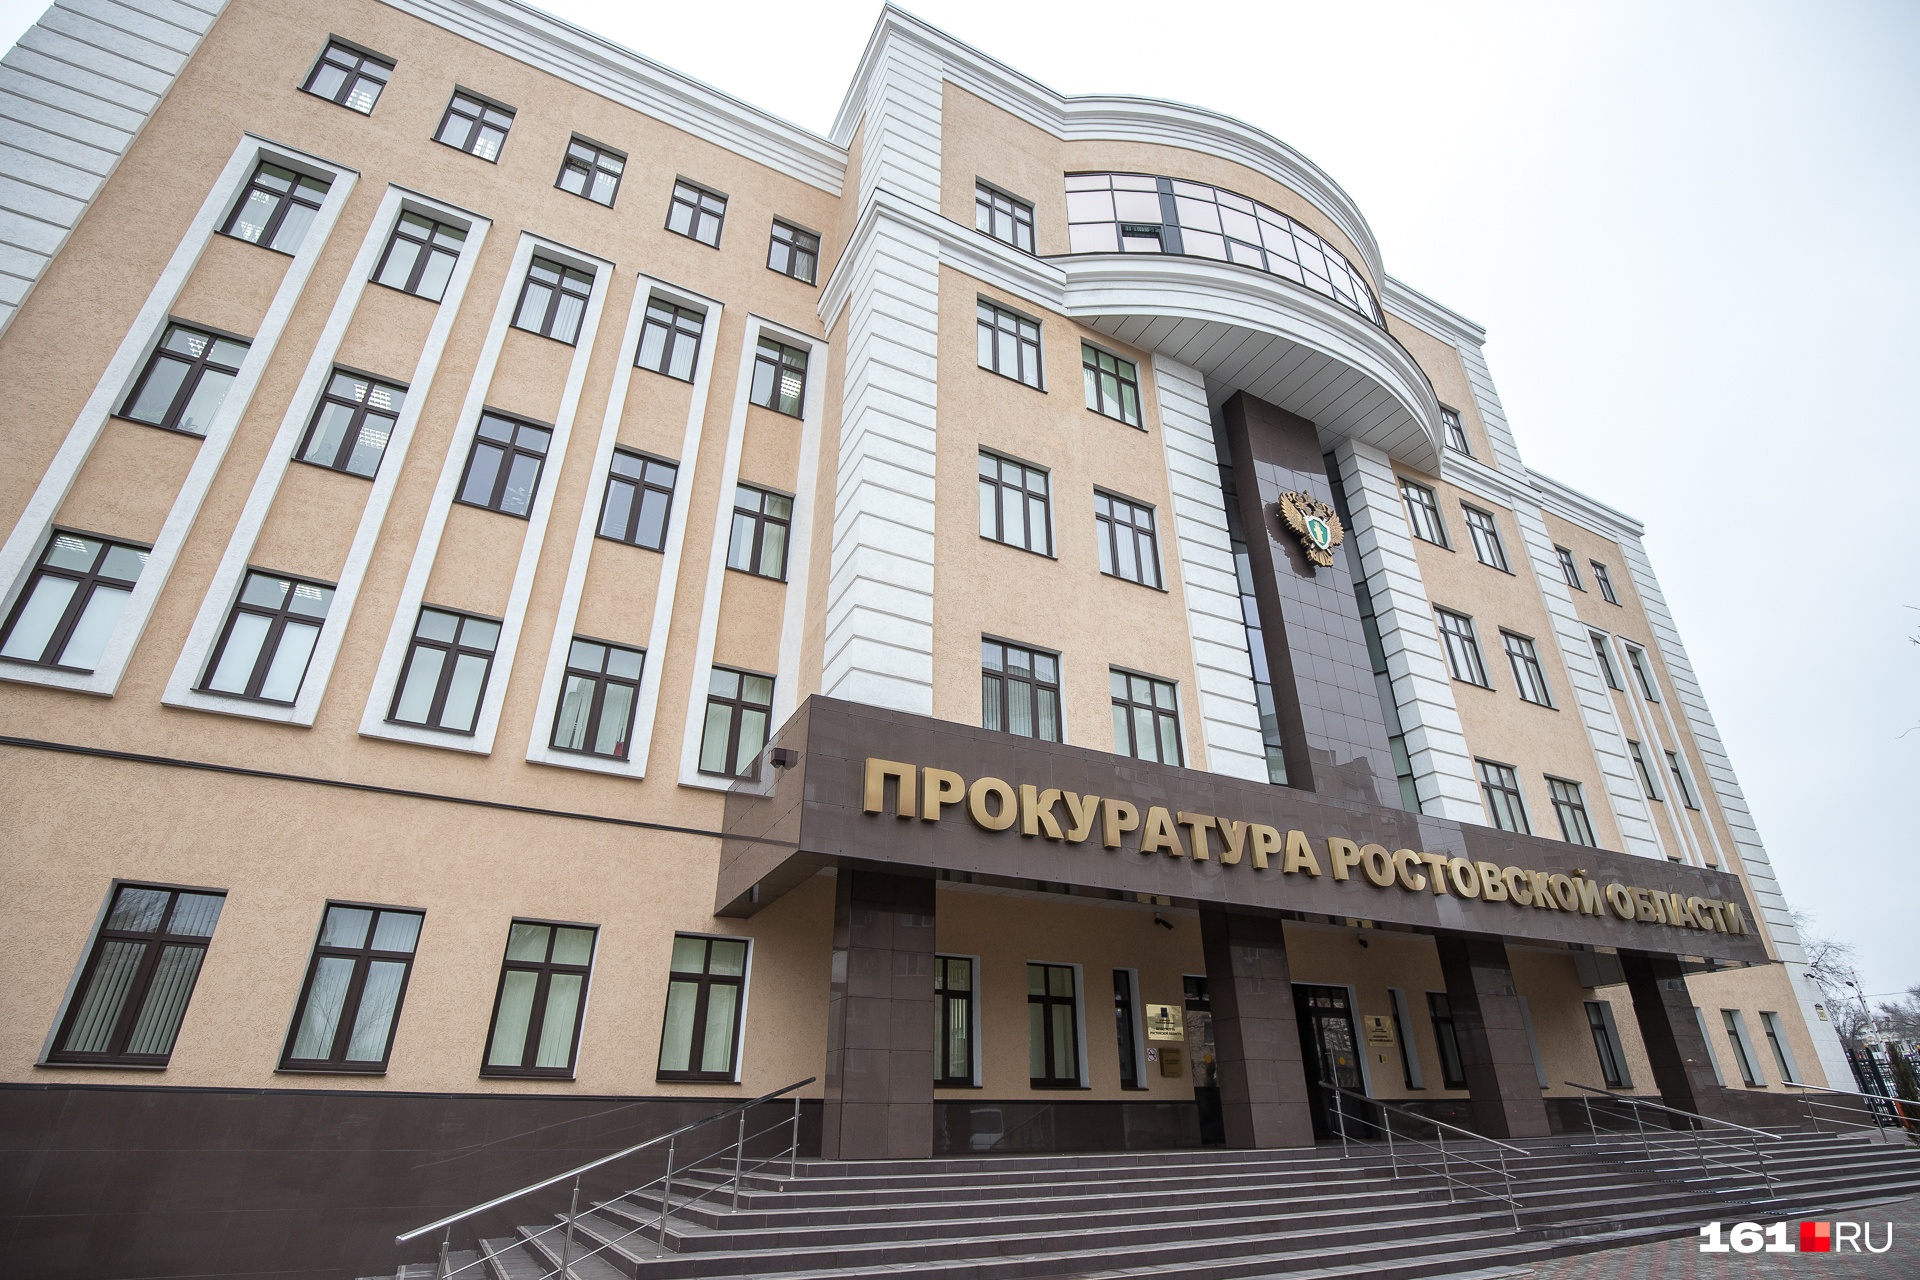 В Ростове супруги-лжеинвалиды получили 700 000 рублей обманом